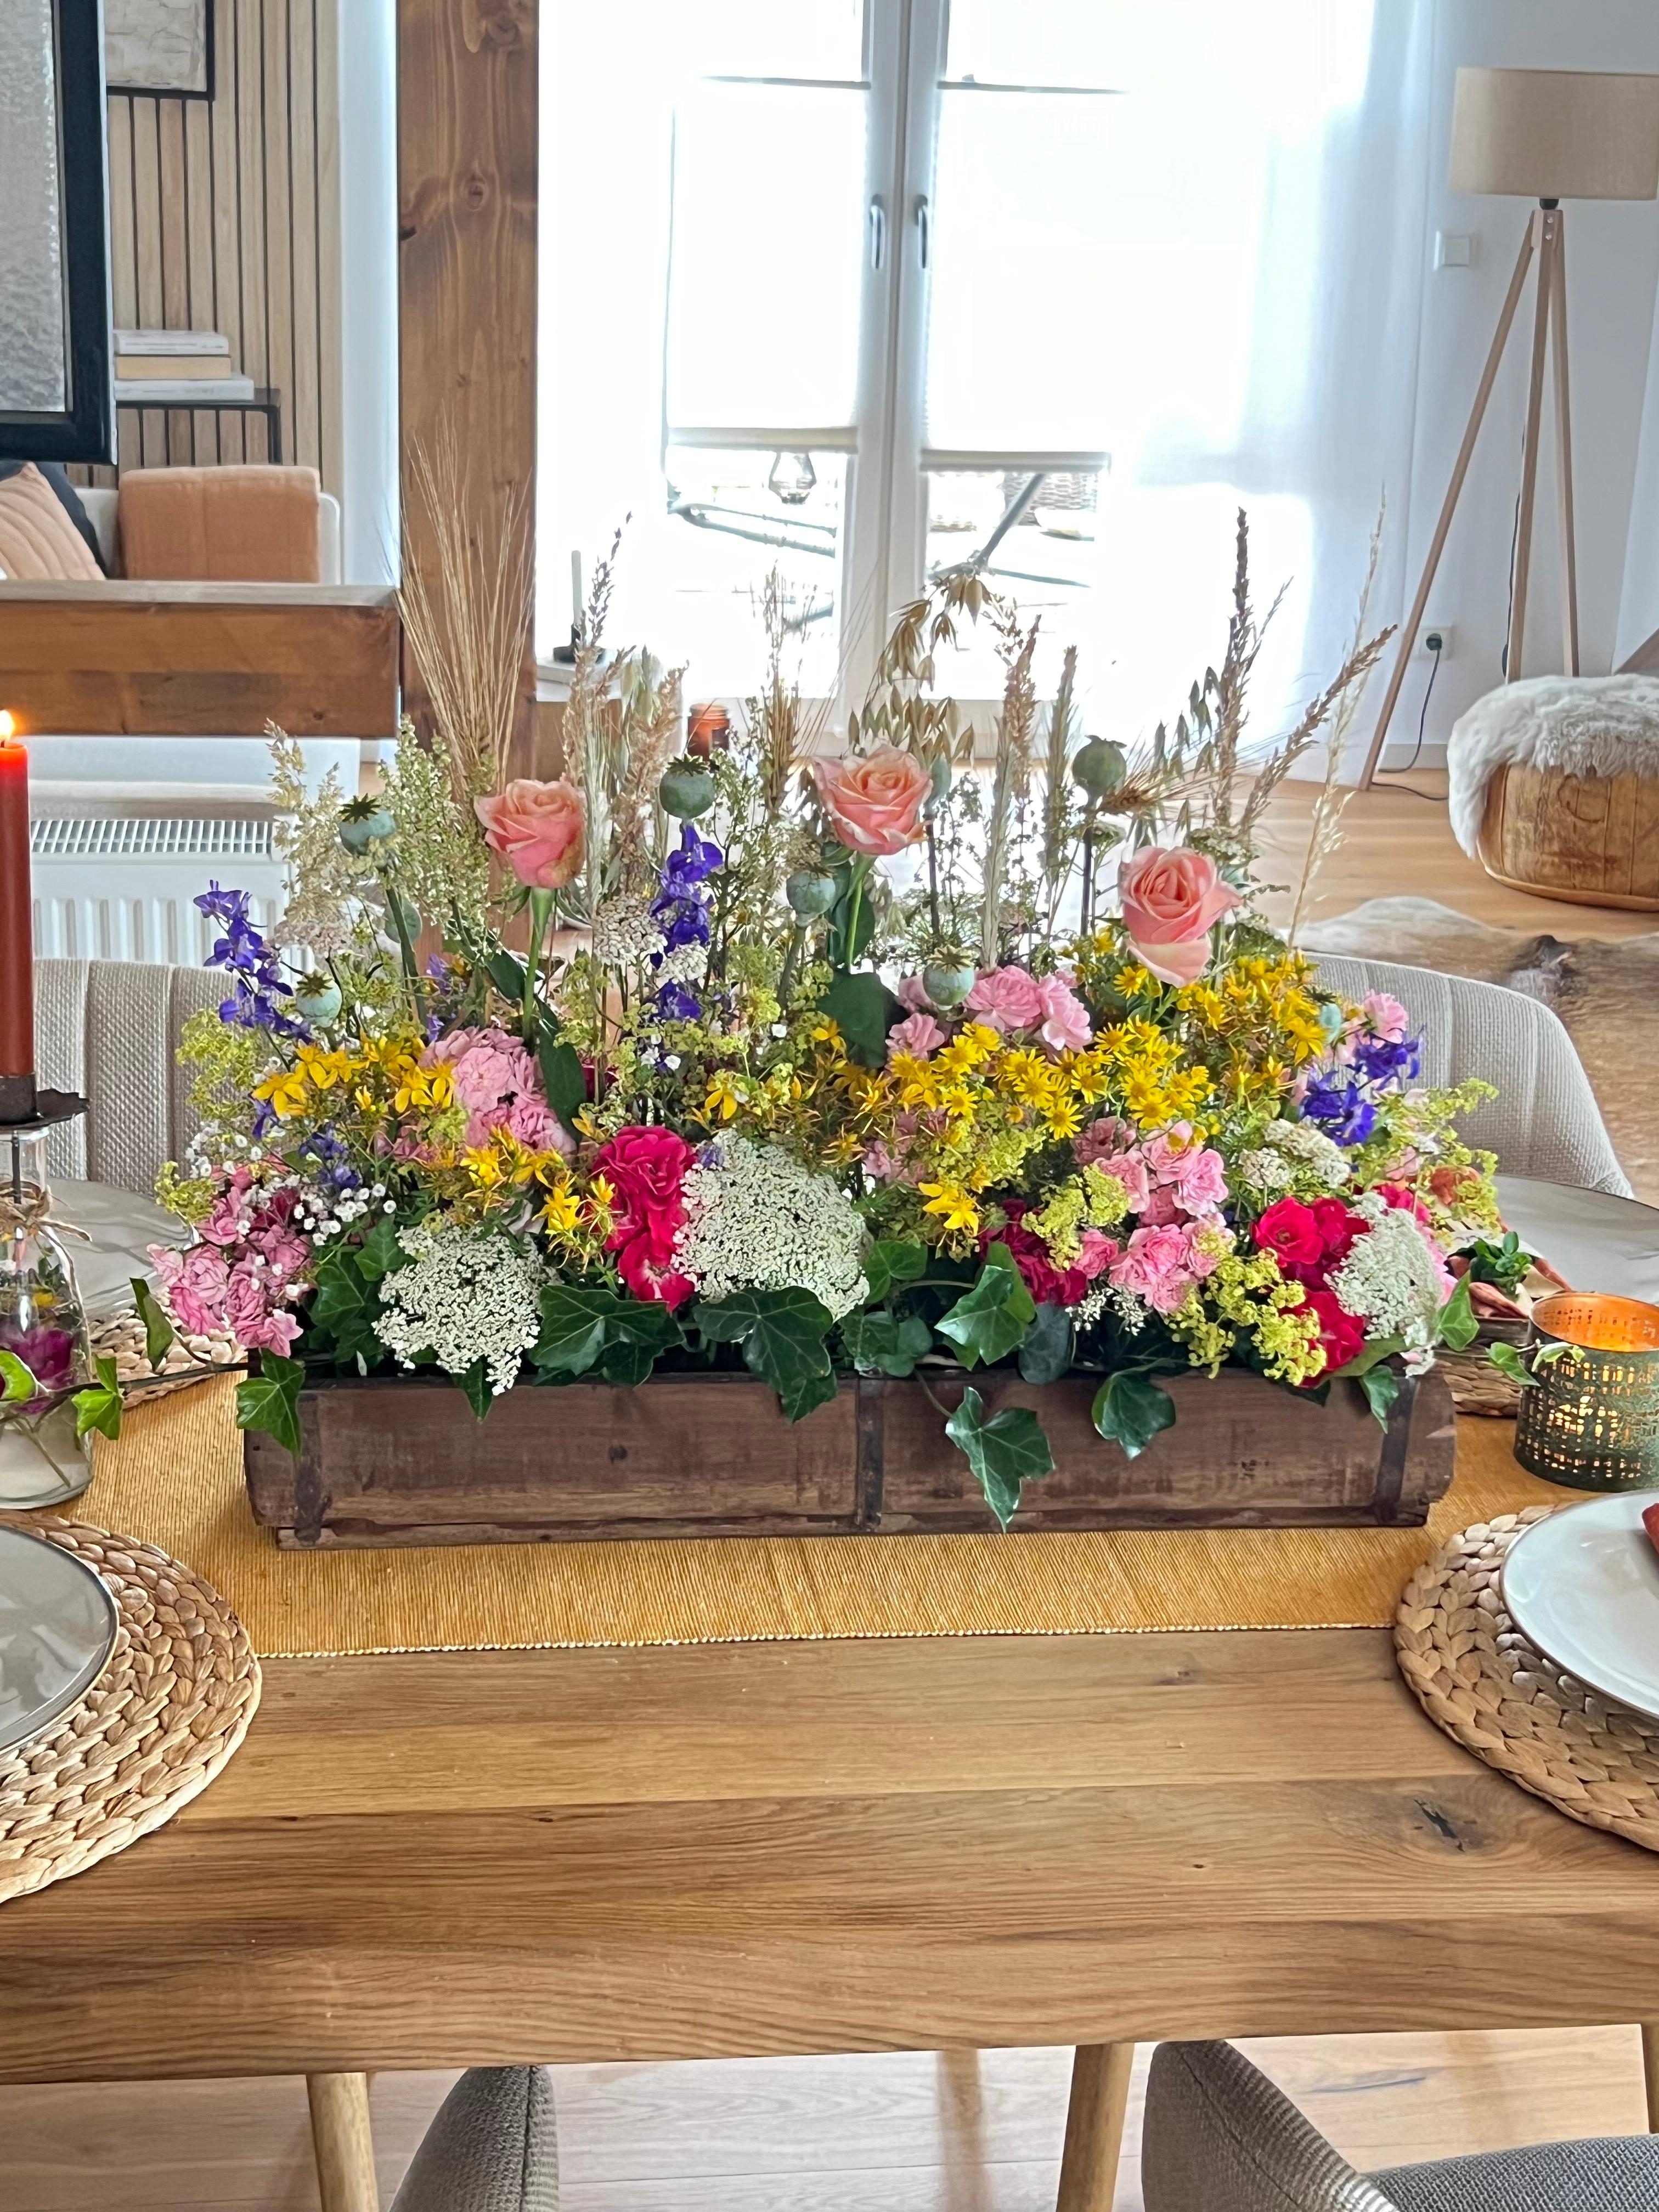 Sommerwiese für den Tisch 🌼
#sommer #tischdeko #flowers #wiedenblumen #ziegelform